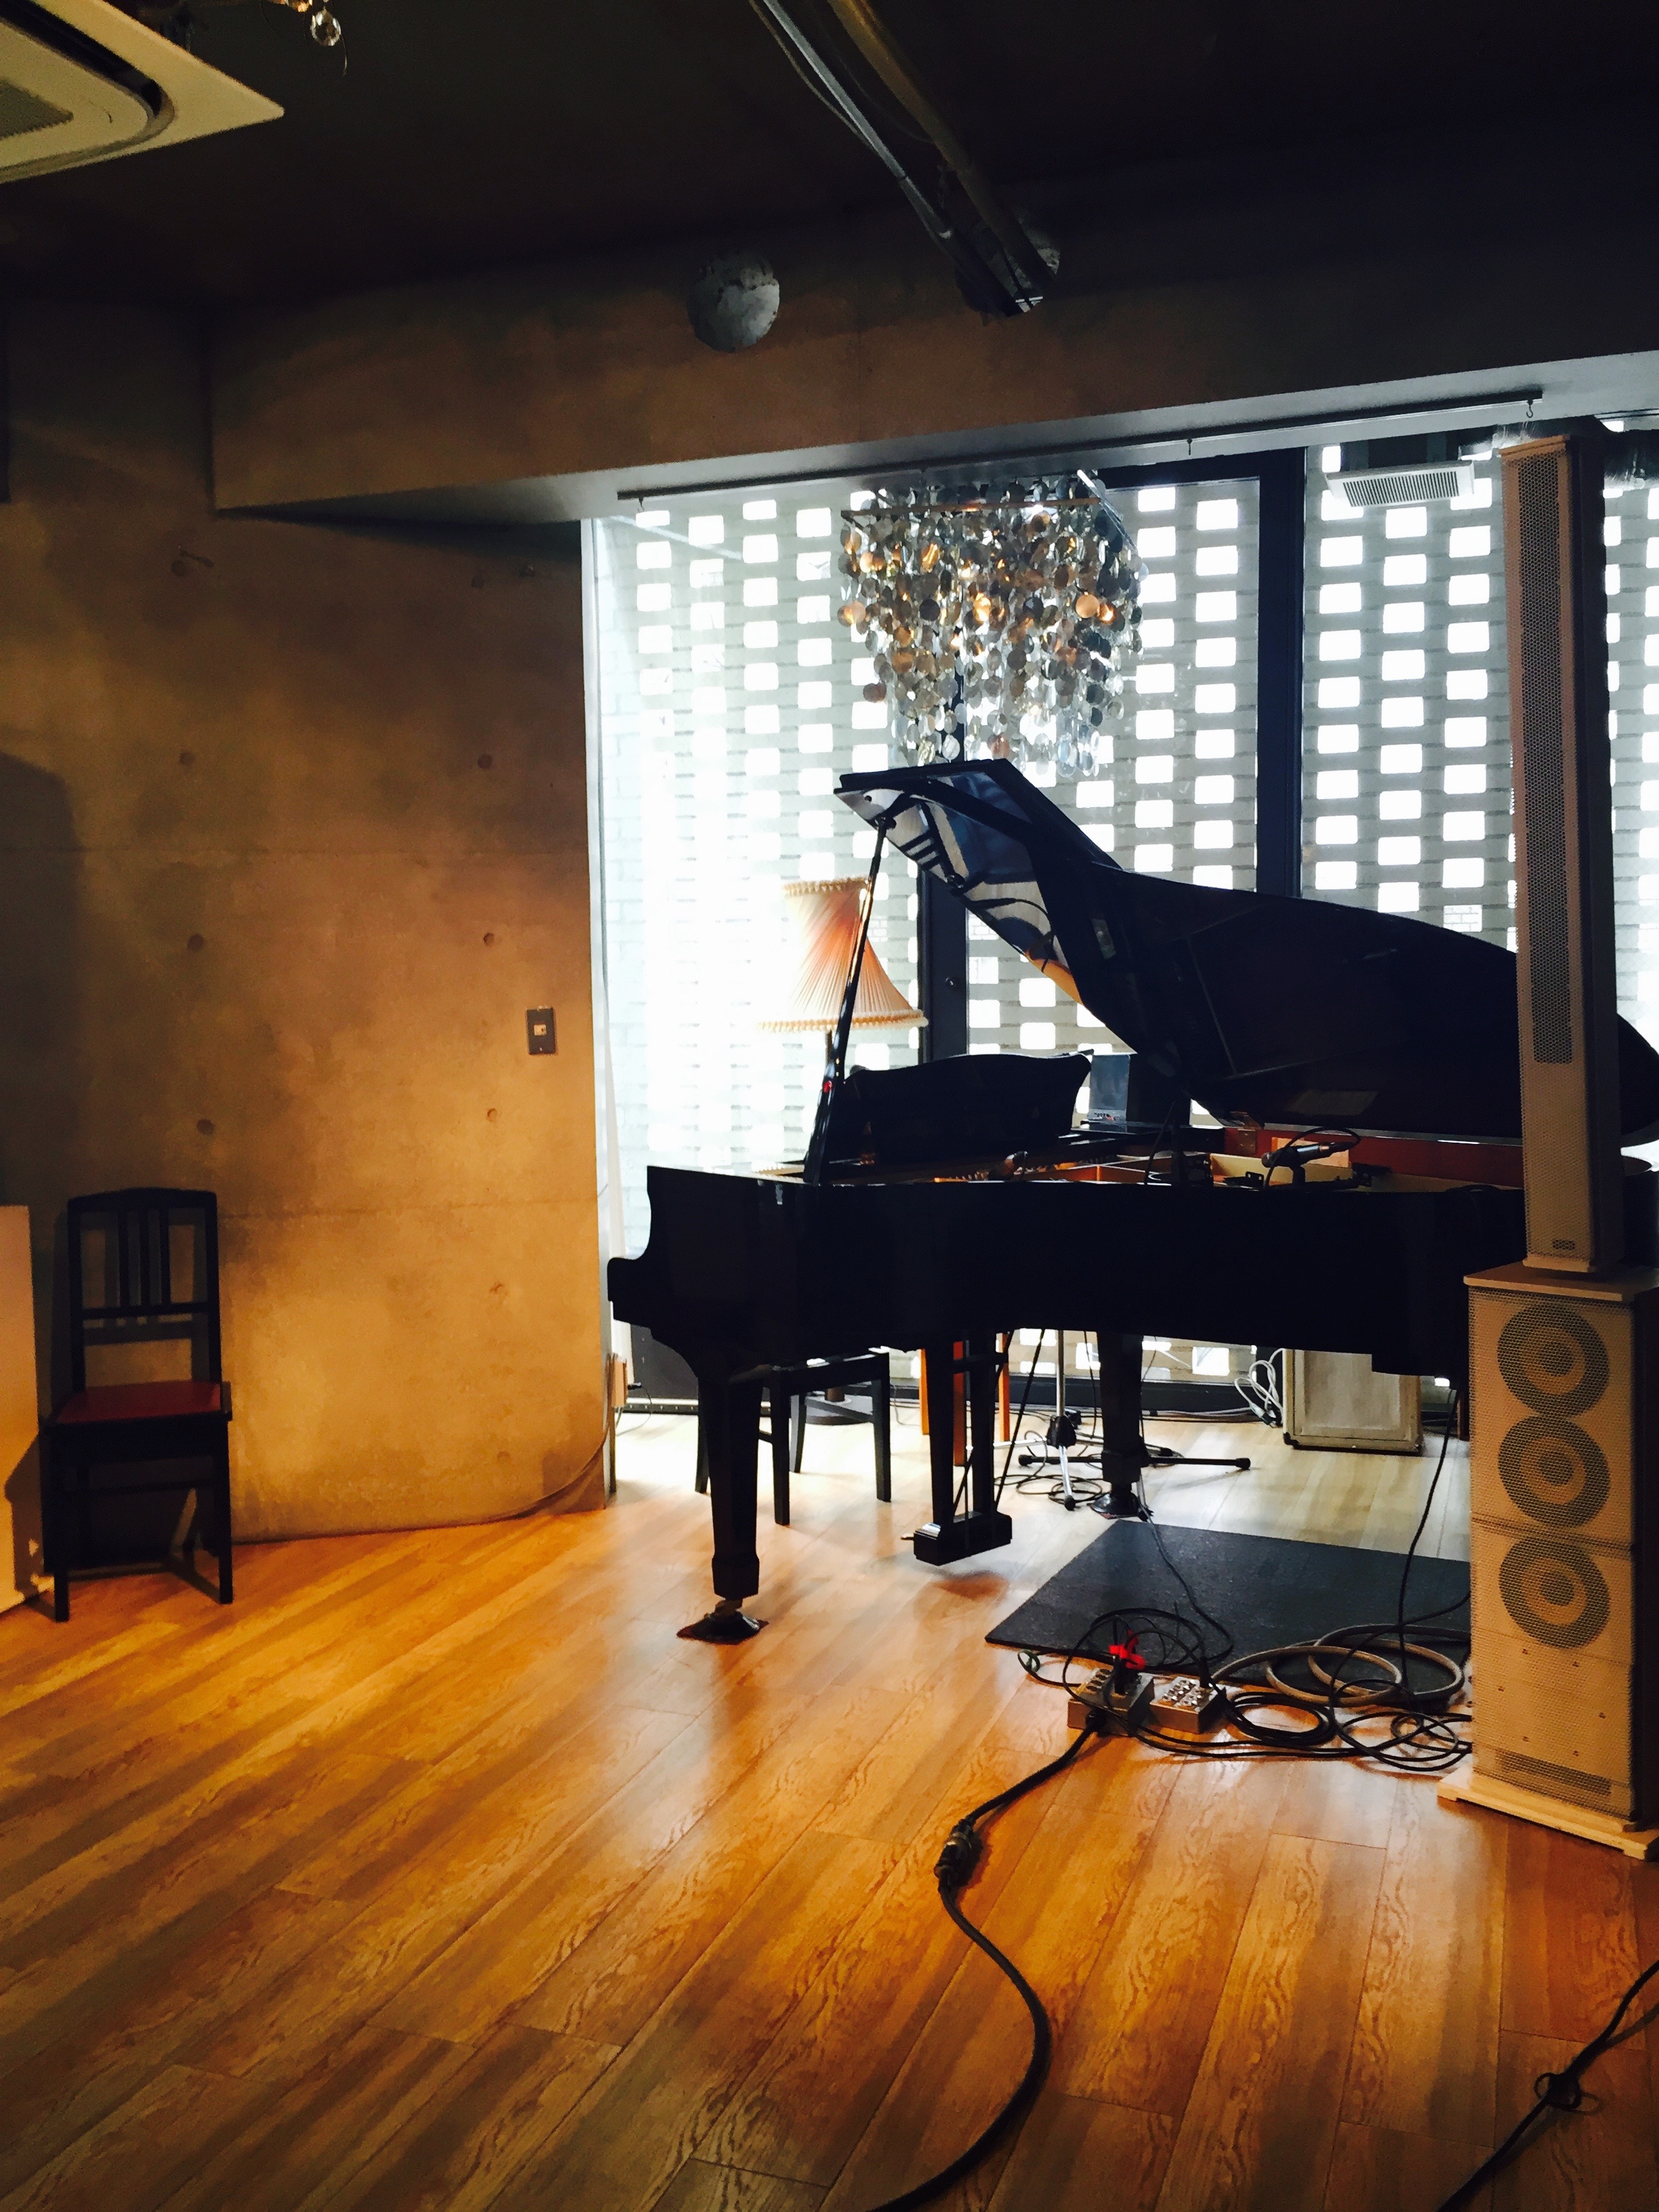 下北沢 グランドピアノに充実の音楽機材 可能性が広がる Workshop Lounge Seed Ship